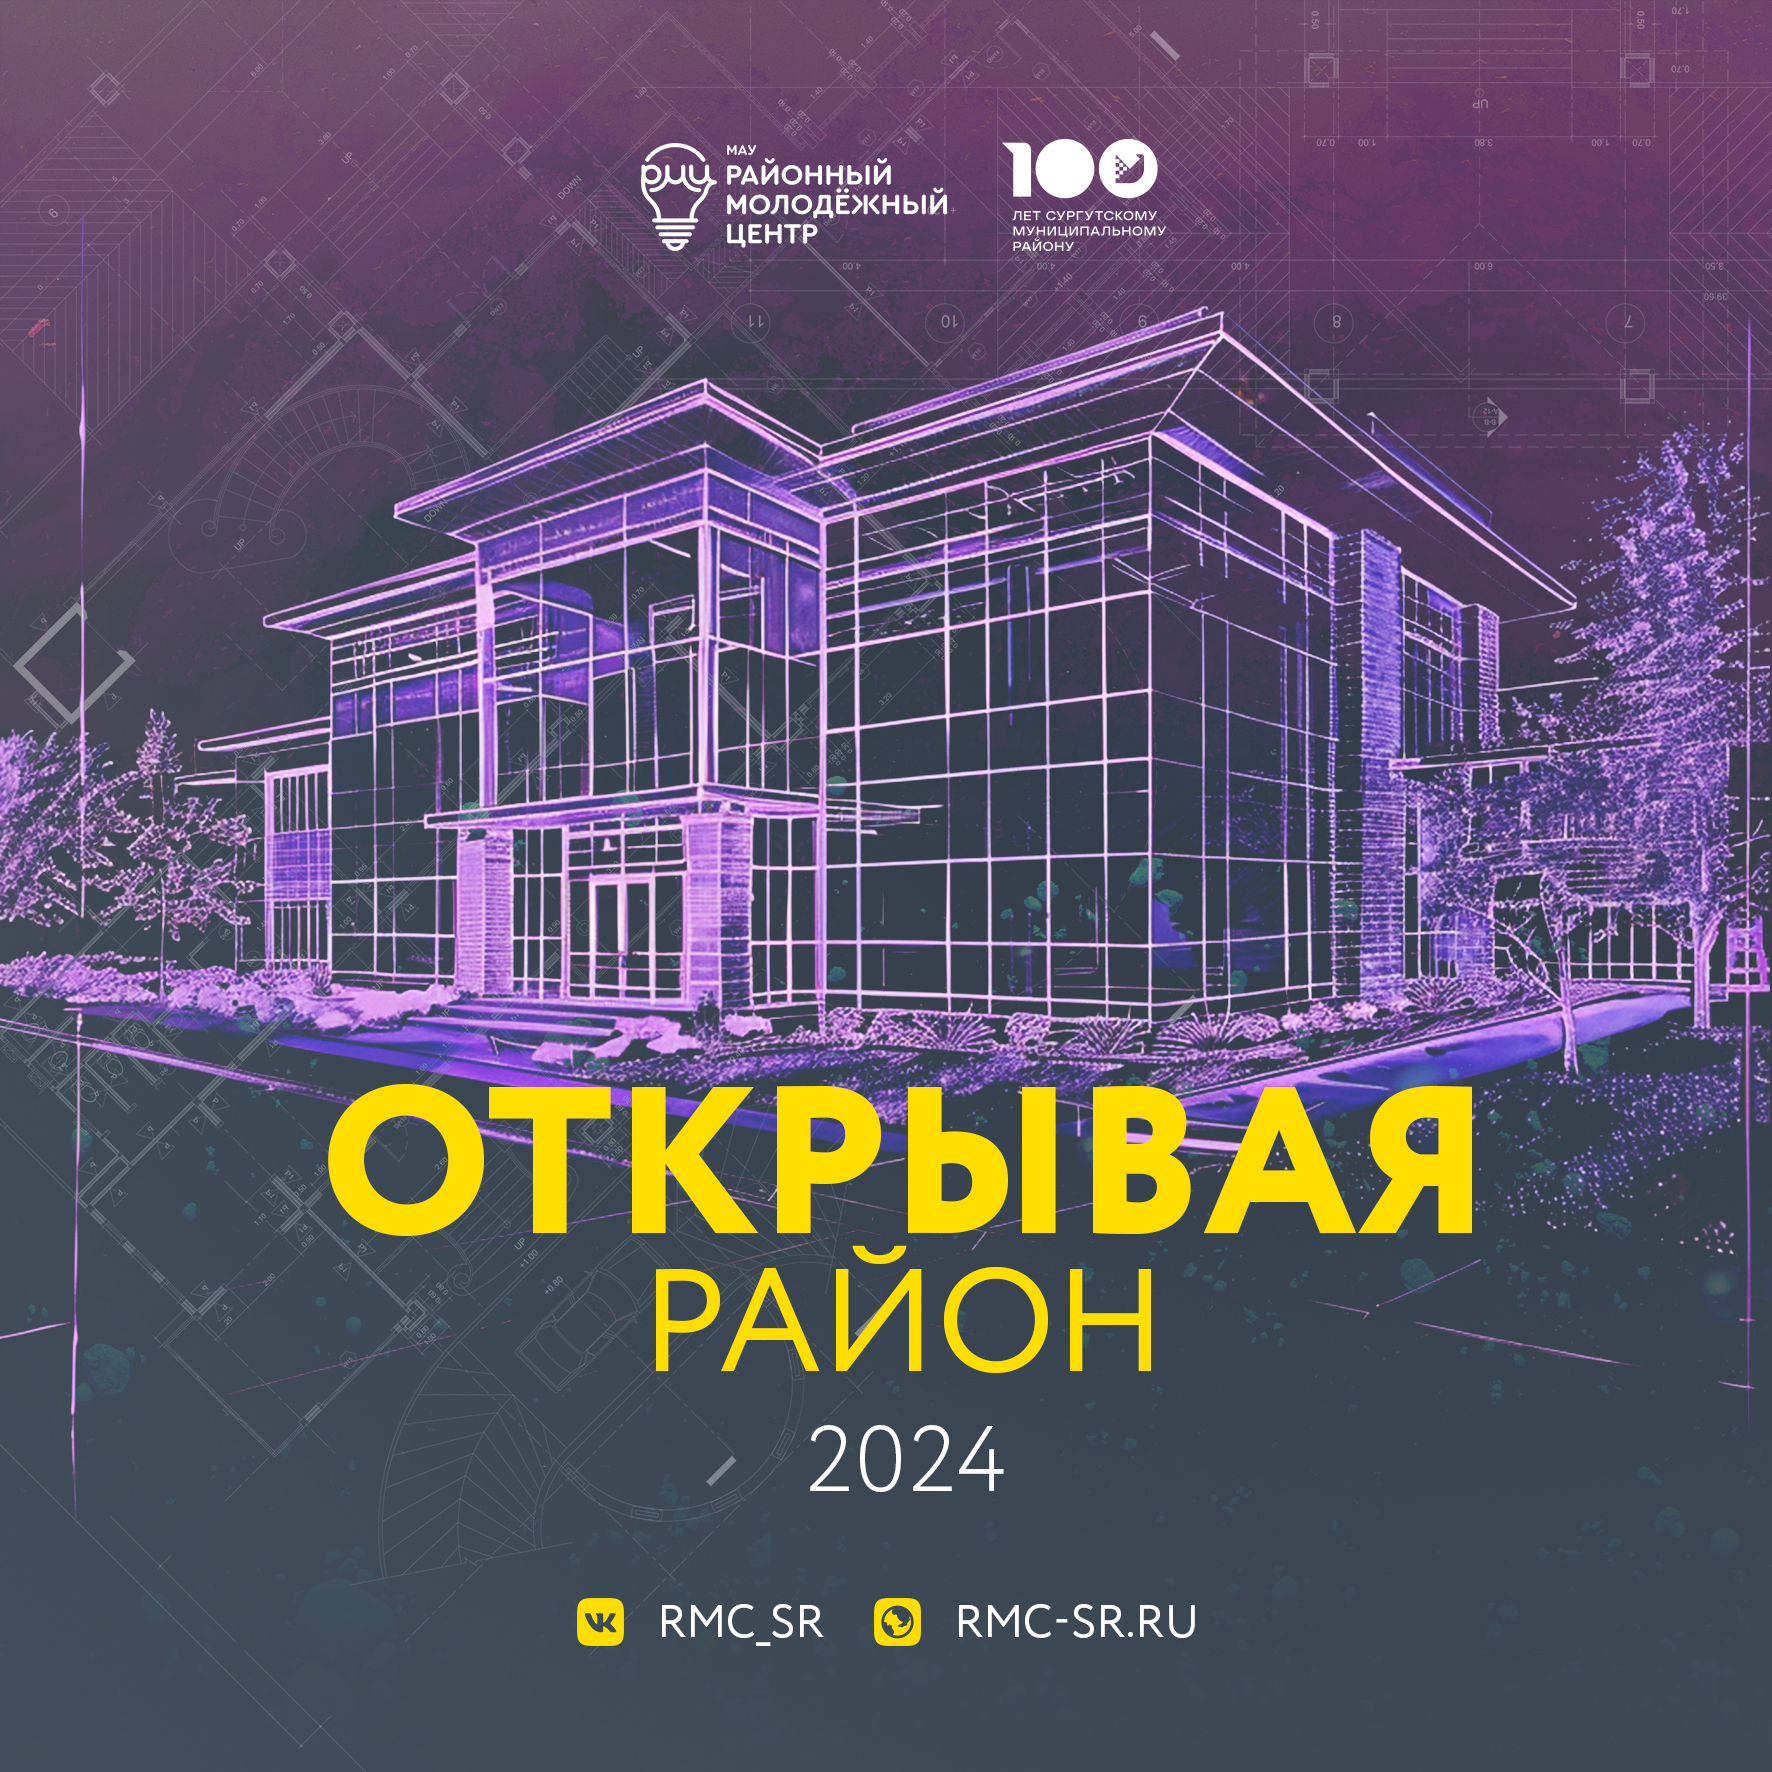 Для молодежи Сургутского района стартовал урбанистический конкурс